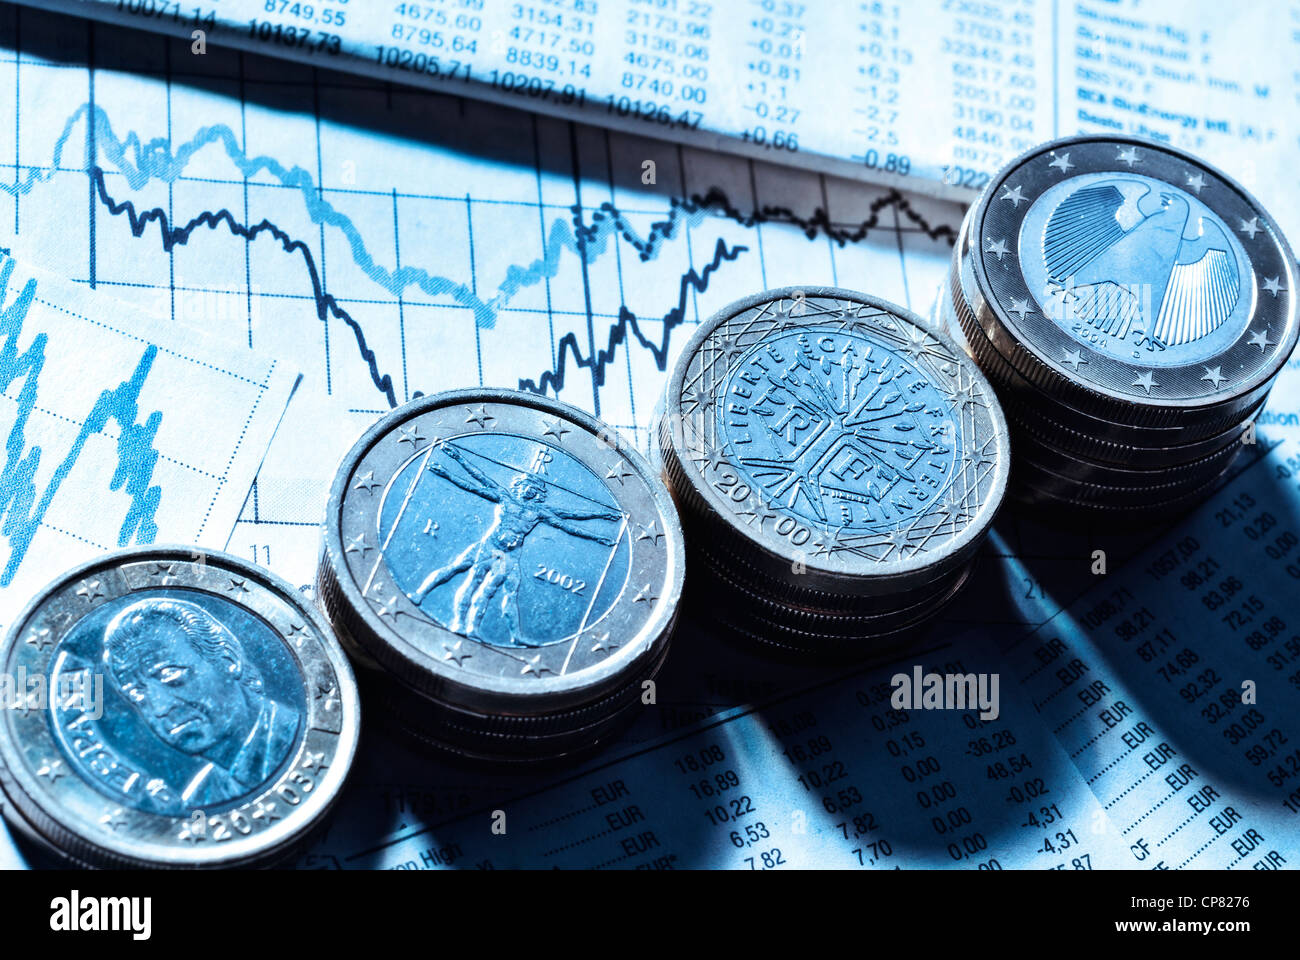 €-Münzen mit den Symbolen der Eurozone Länder Deutschland, Frankreich, Italien und Spanien sowie Tarifpreistabellen und Diagramme. Stockfoto